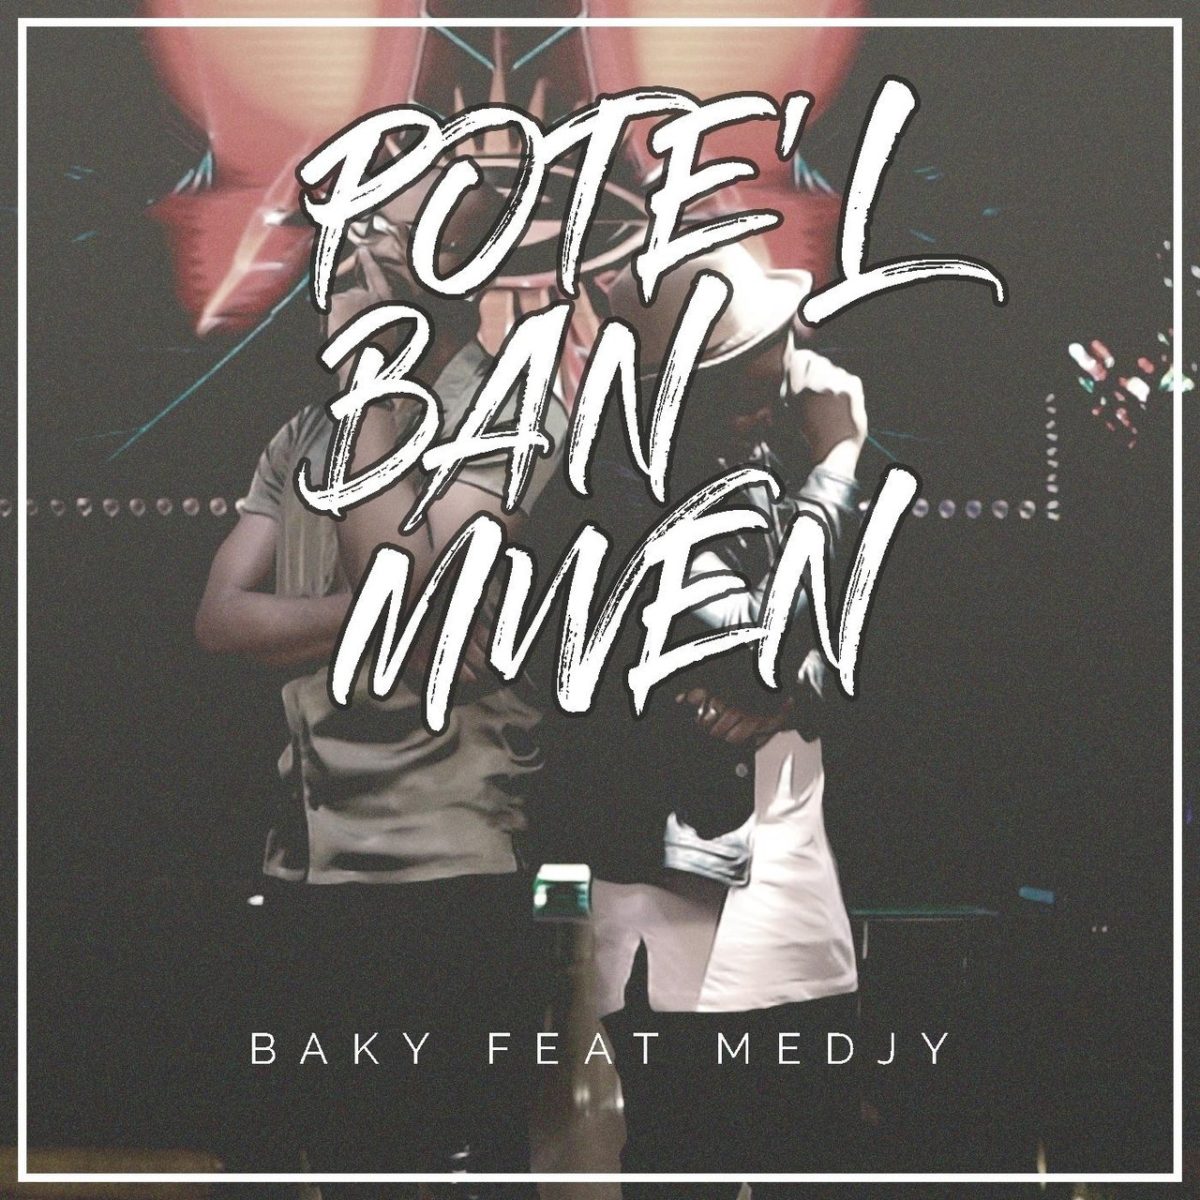 Baky - Pote'l banm (ft. Medjy) (Cover)